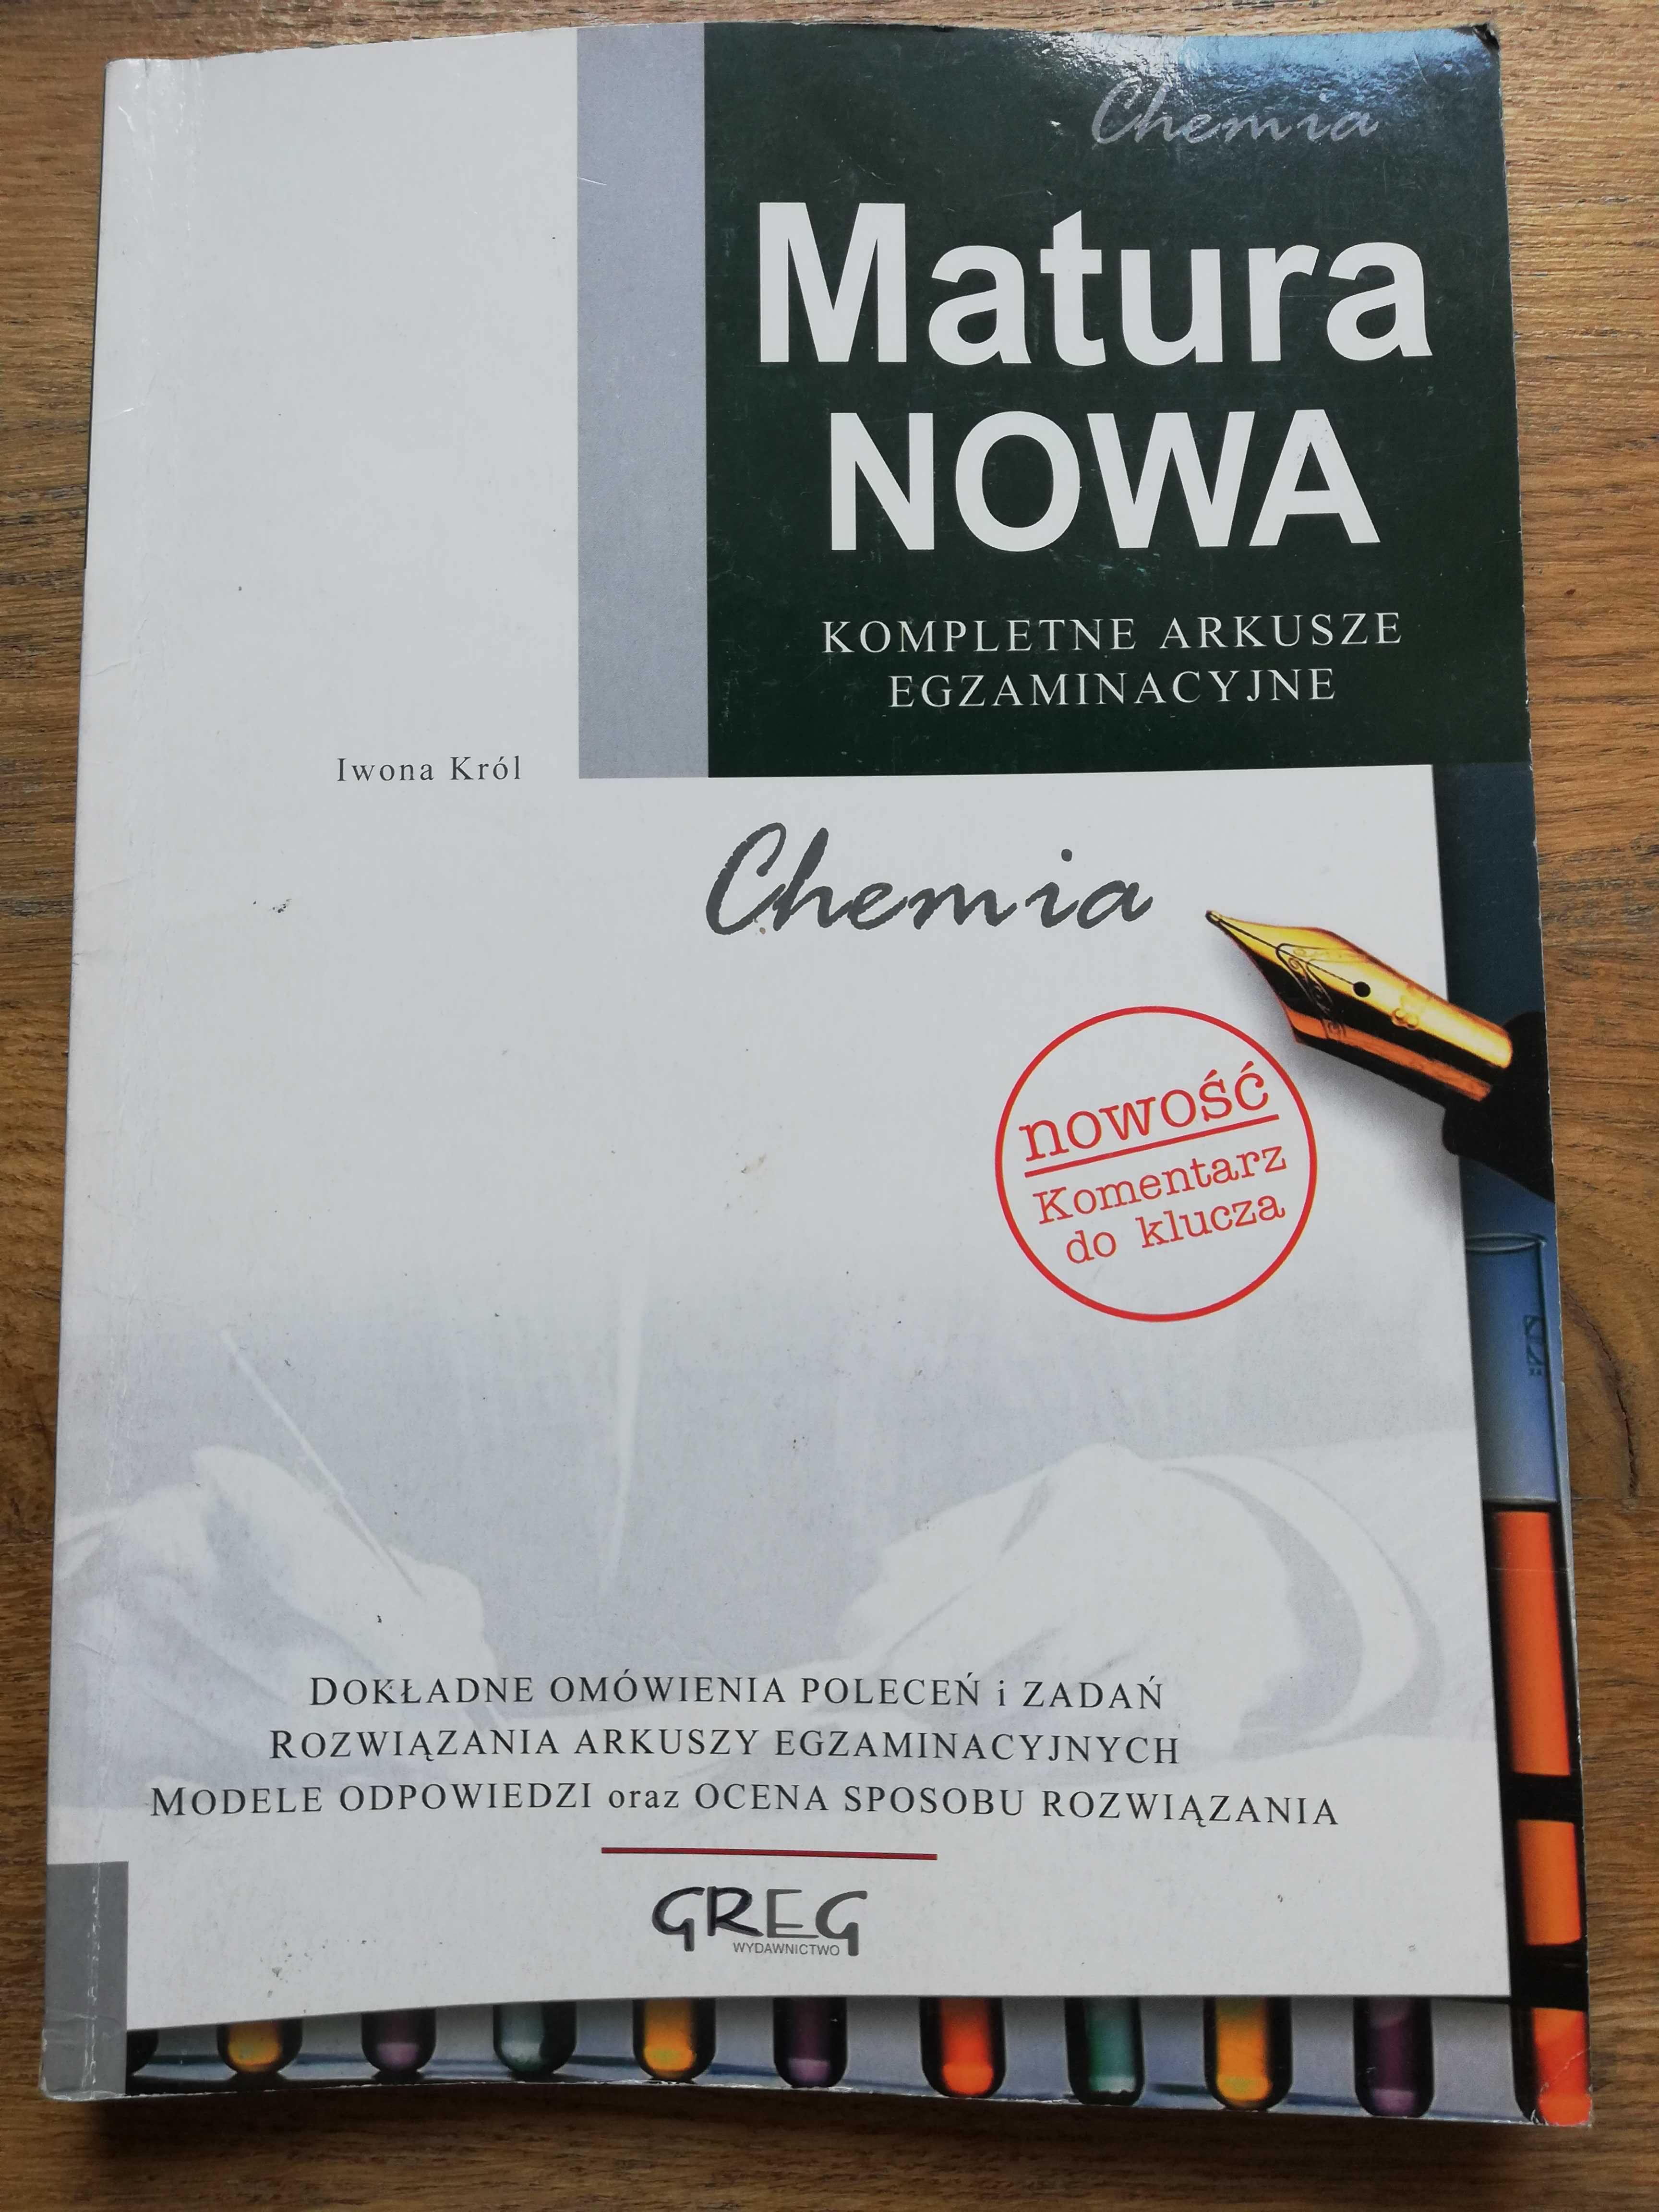 Chemia Matura Nowa kompletne arkusze egzaminacyjne- I. Król